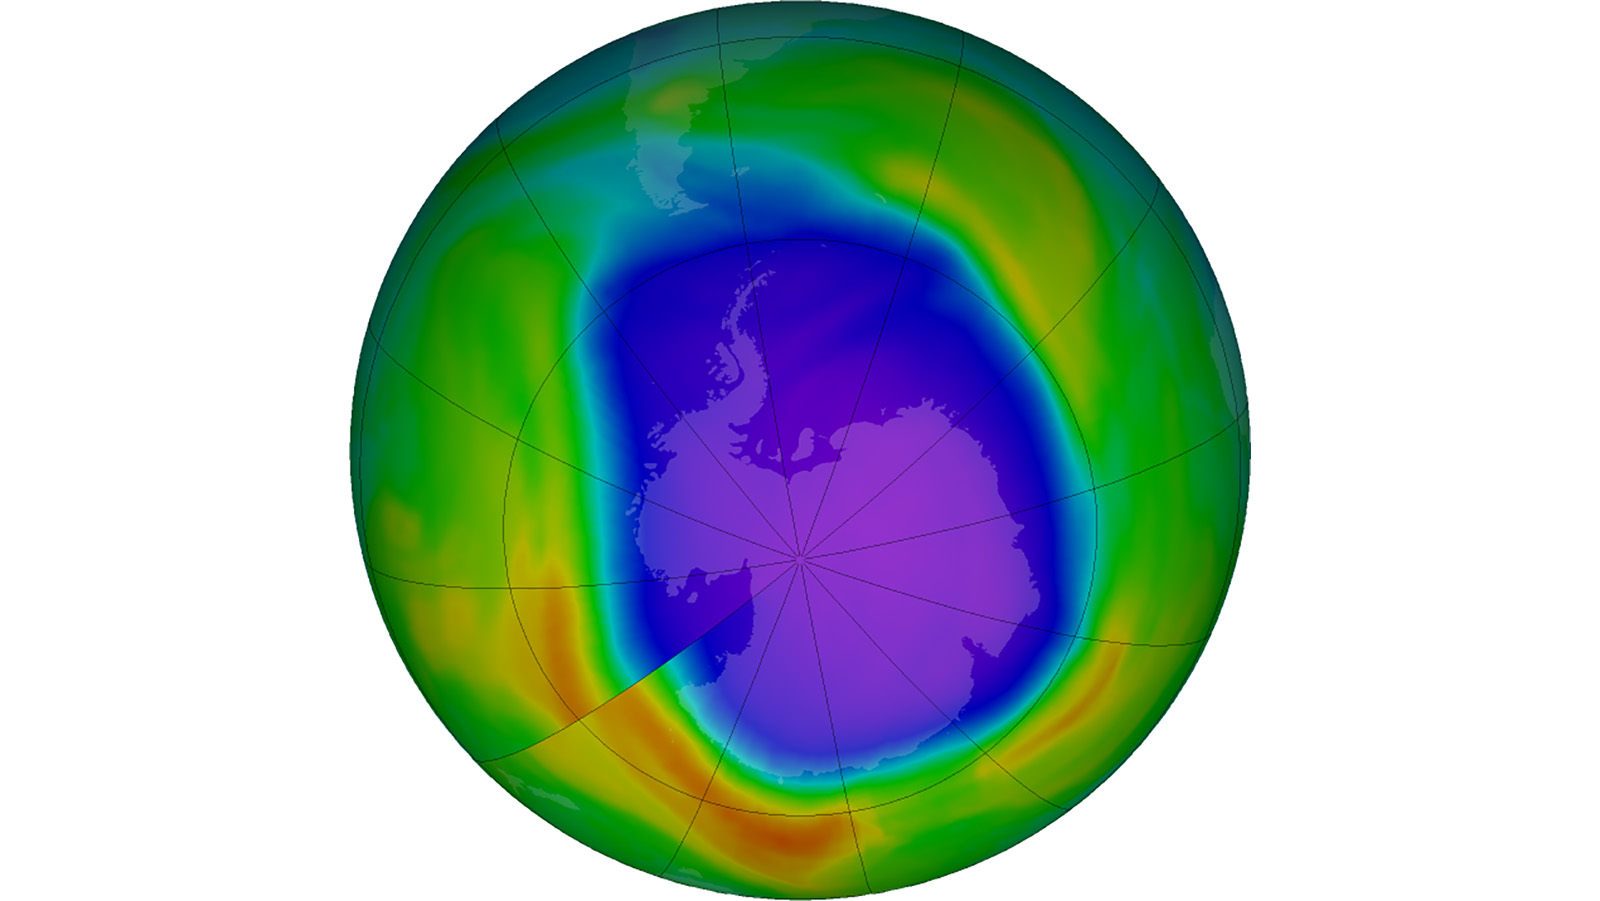 Ozone layer depletion